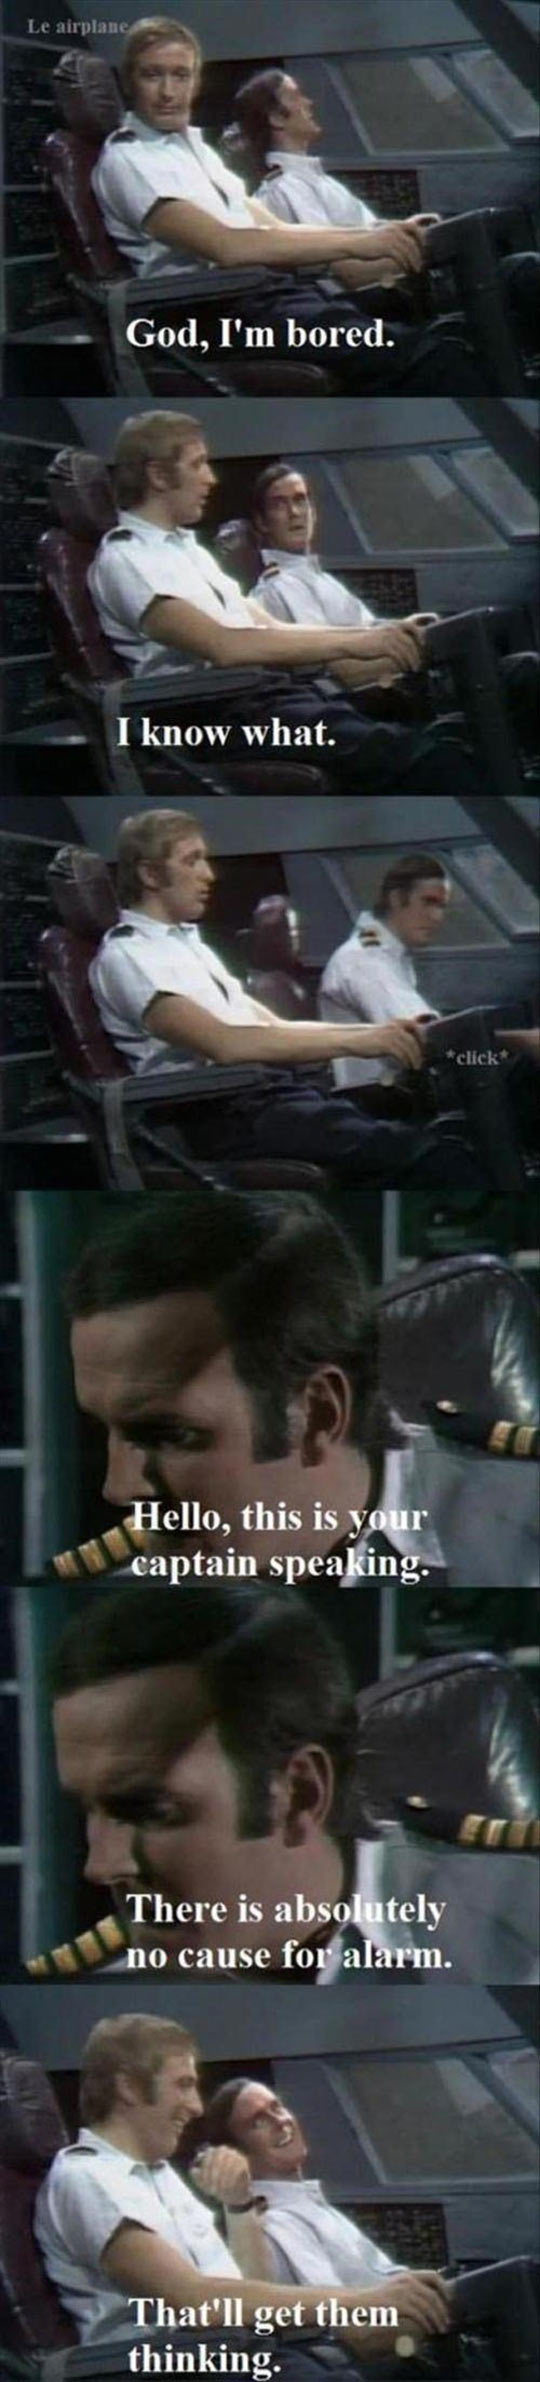 When Pilots Get A Little Bored